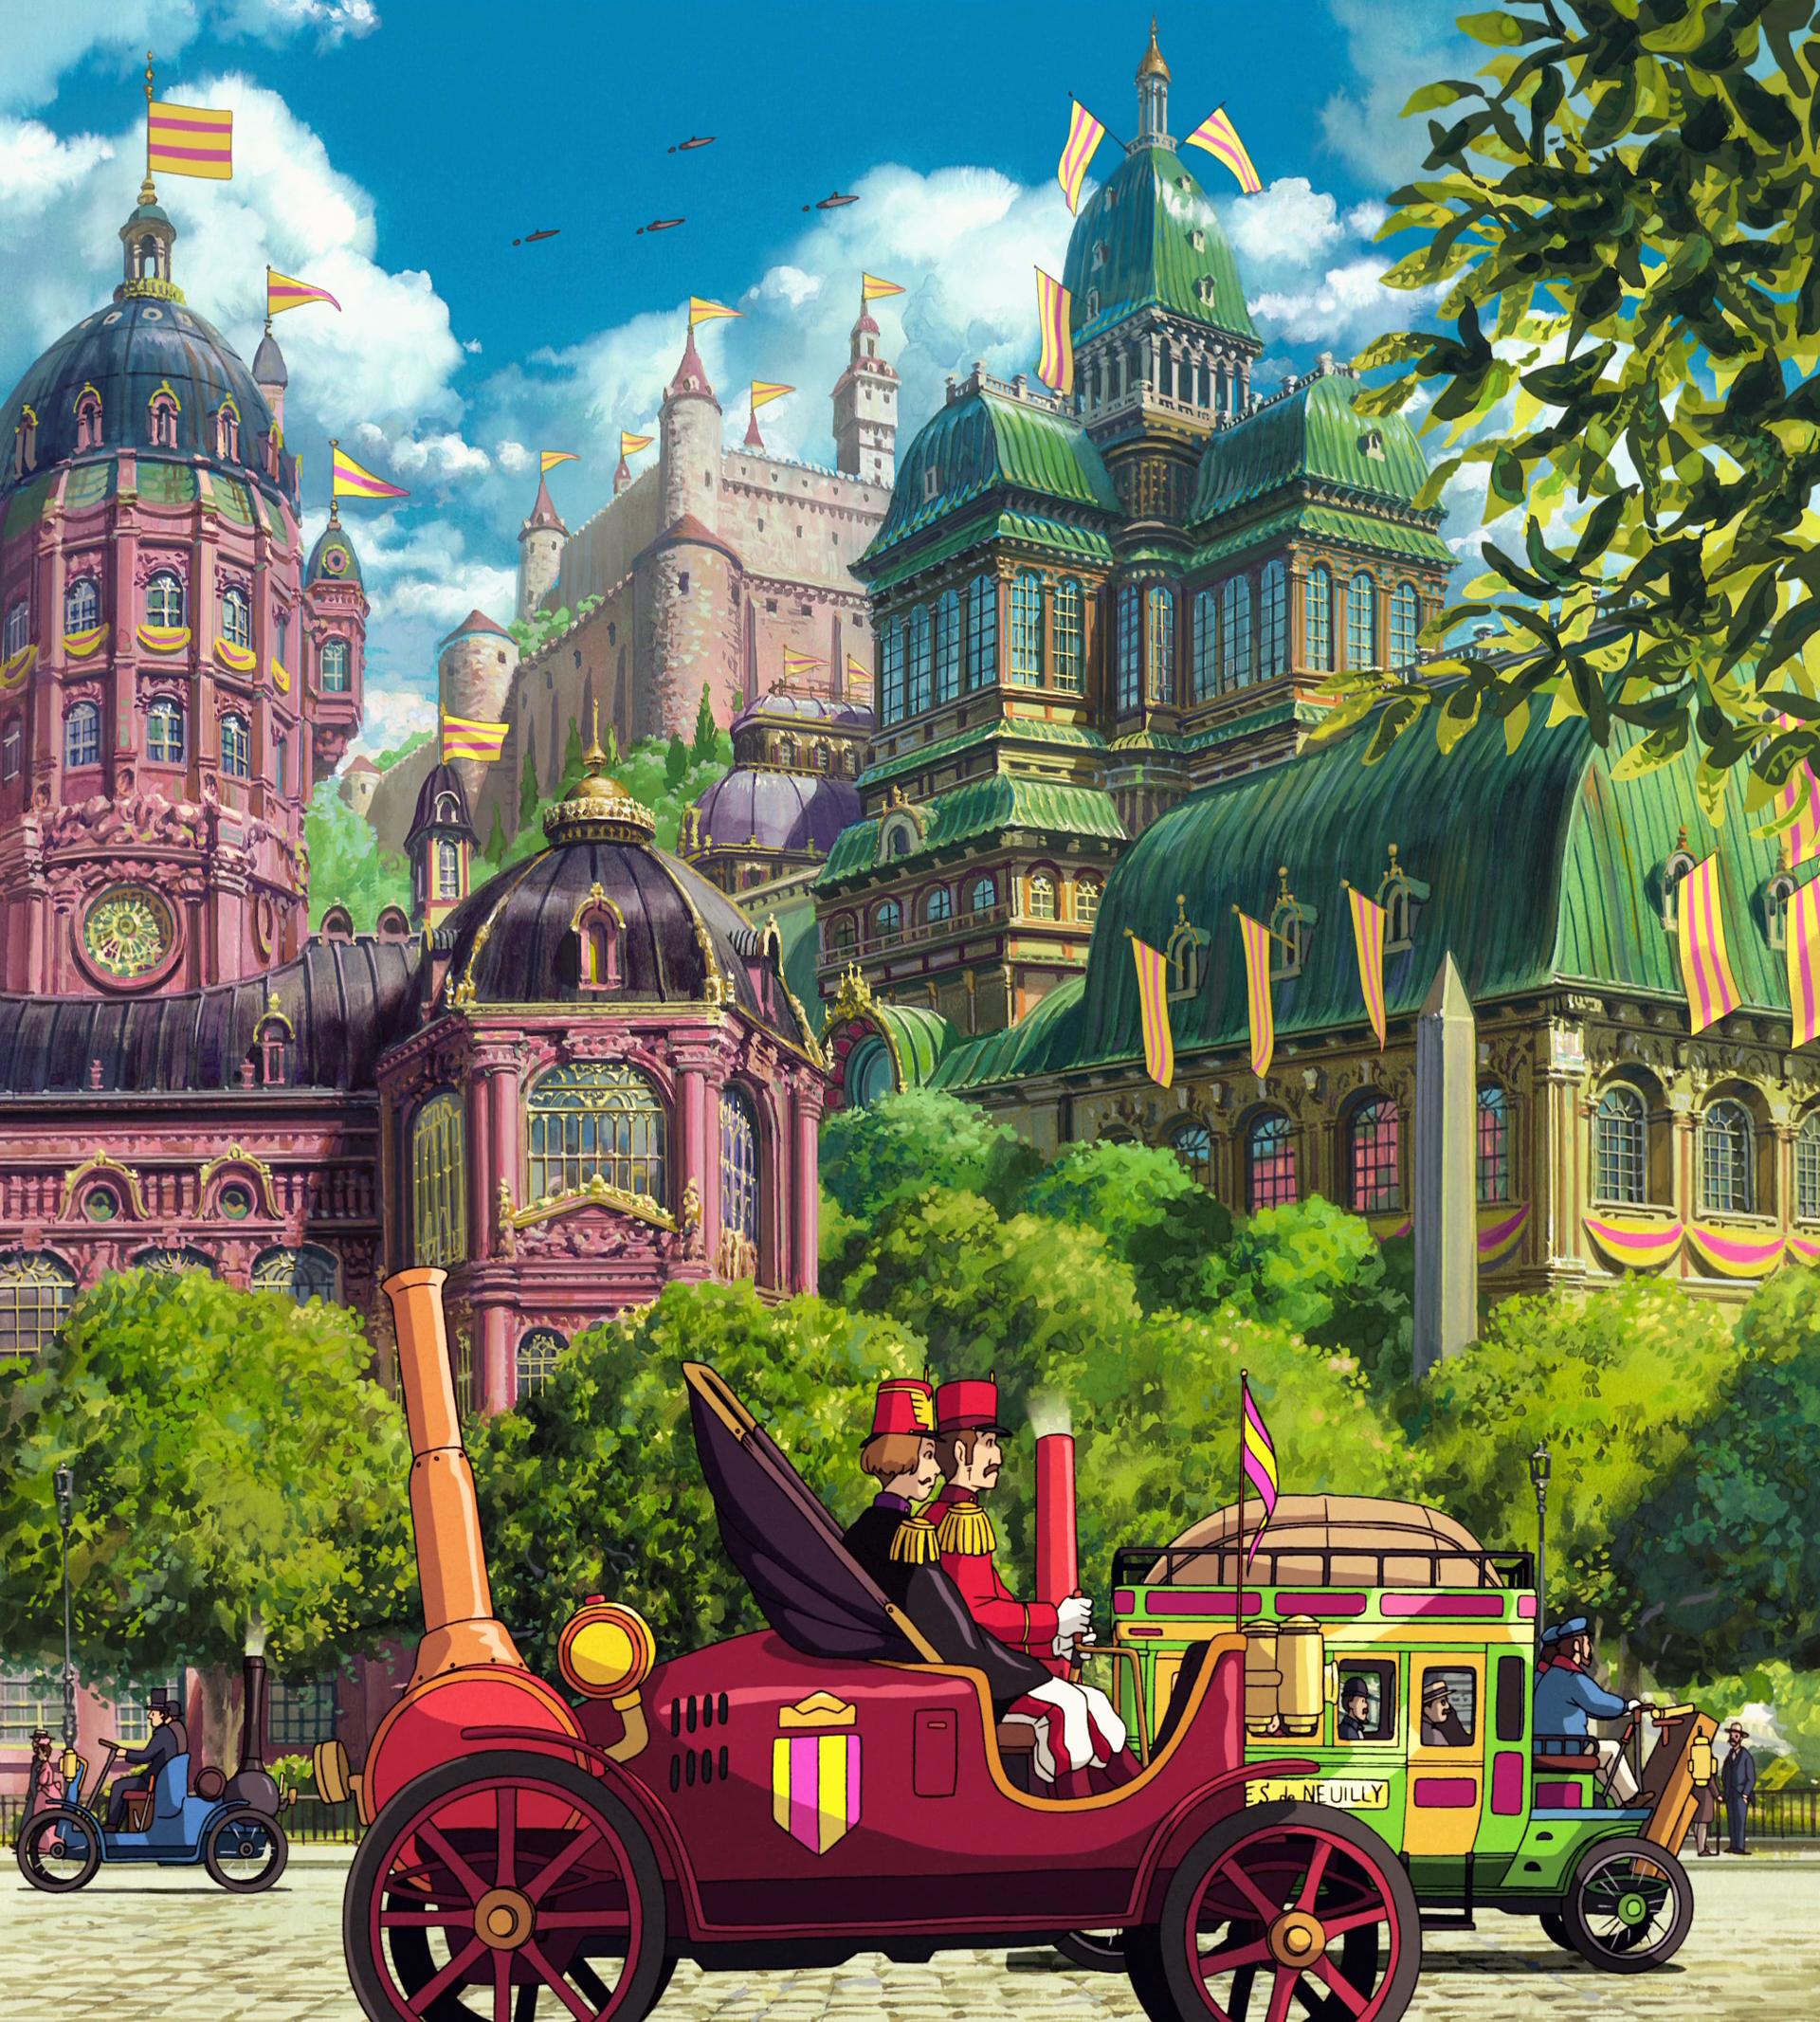 100 Studio Ghibli wallpapers! Awesome. : anime